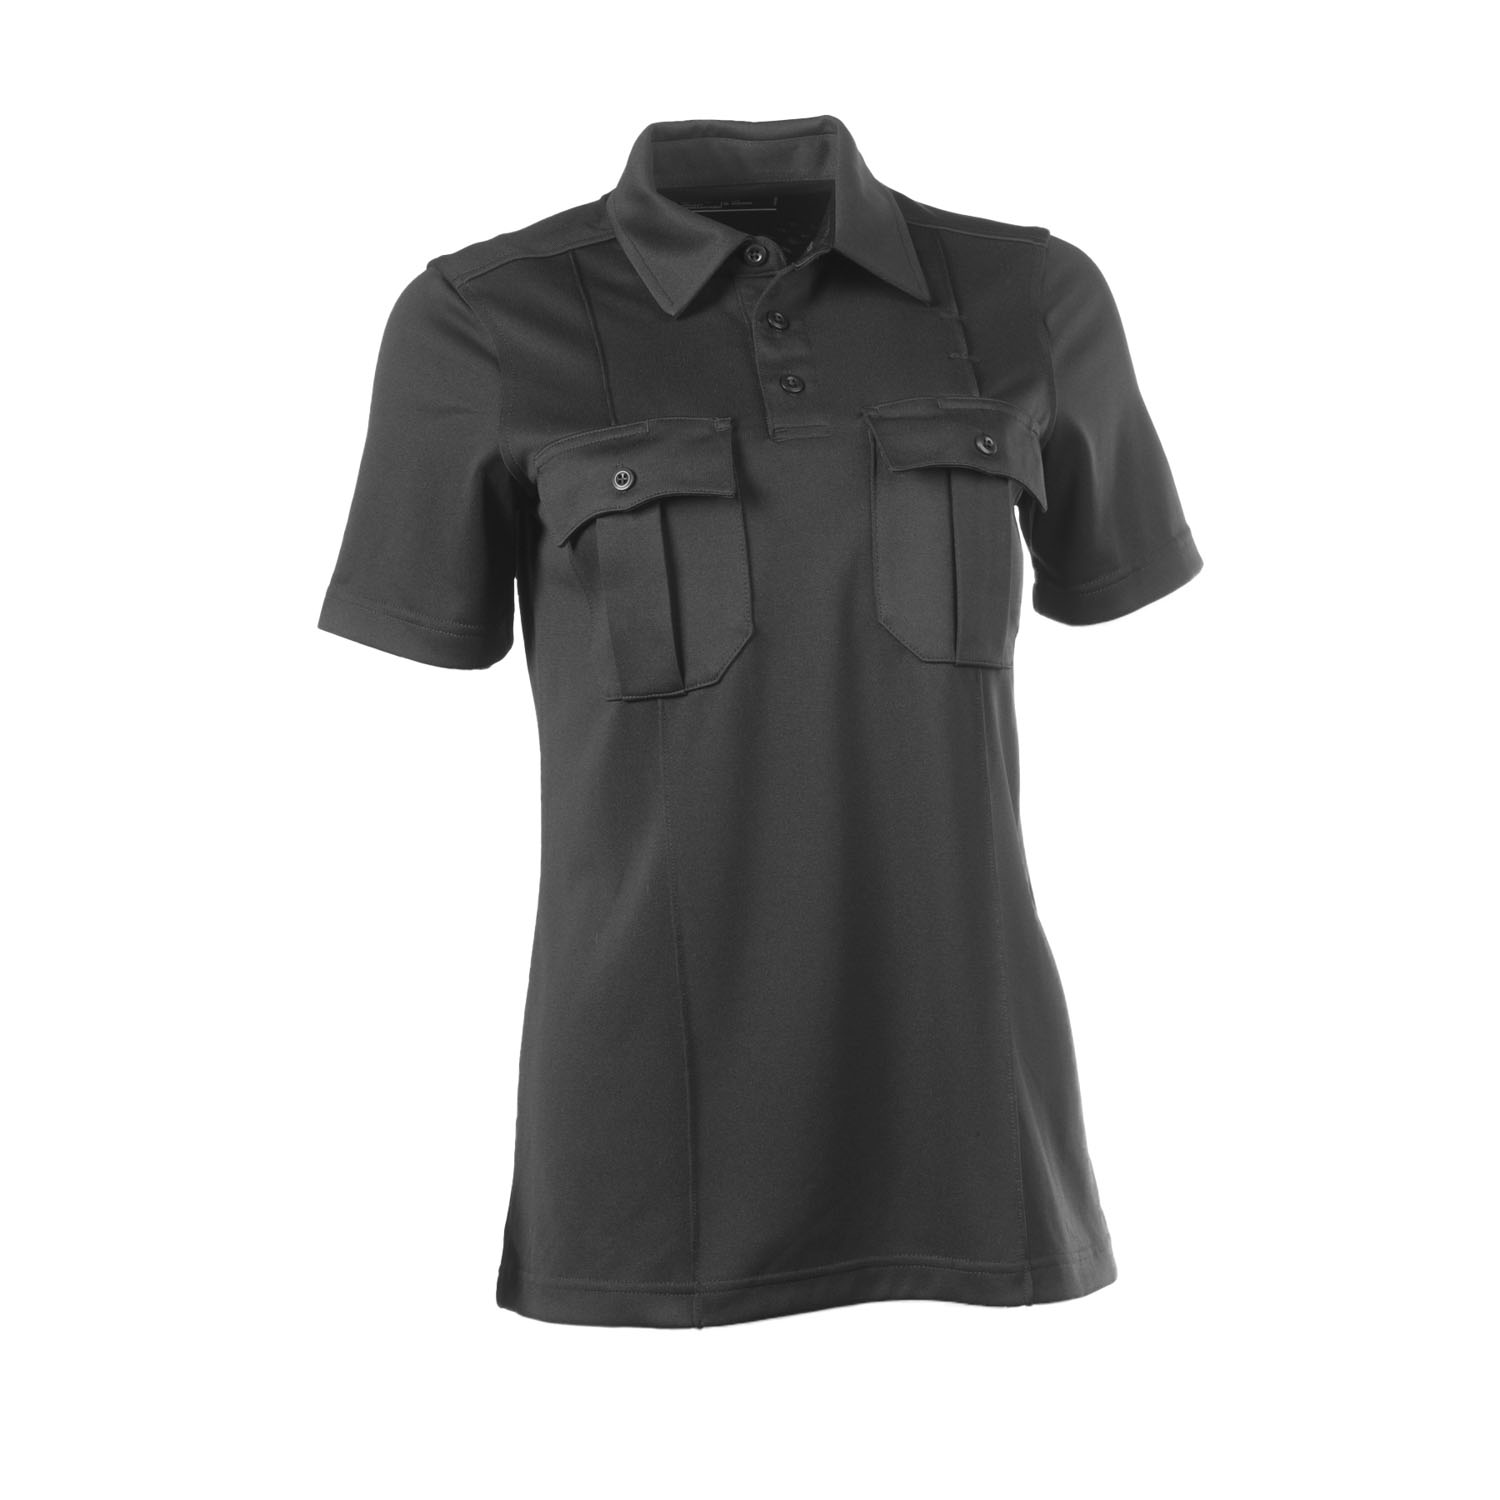 5.11 Tactical Women's Class A Uniform Short Sleeve Polo